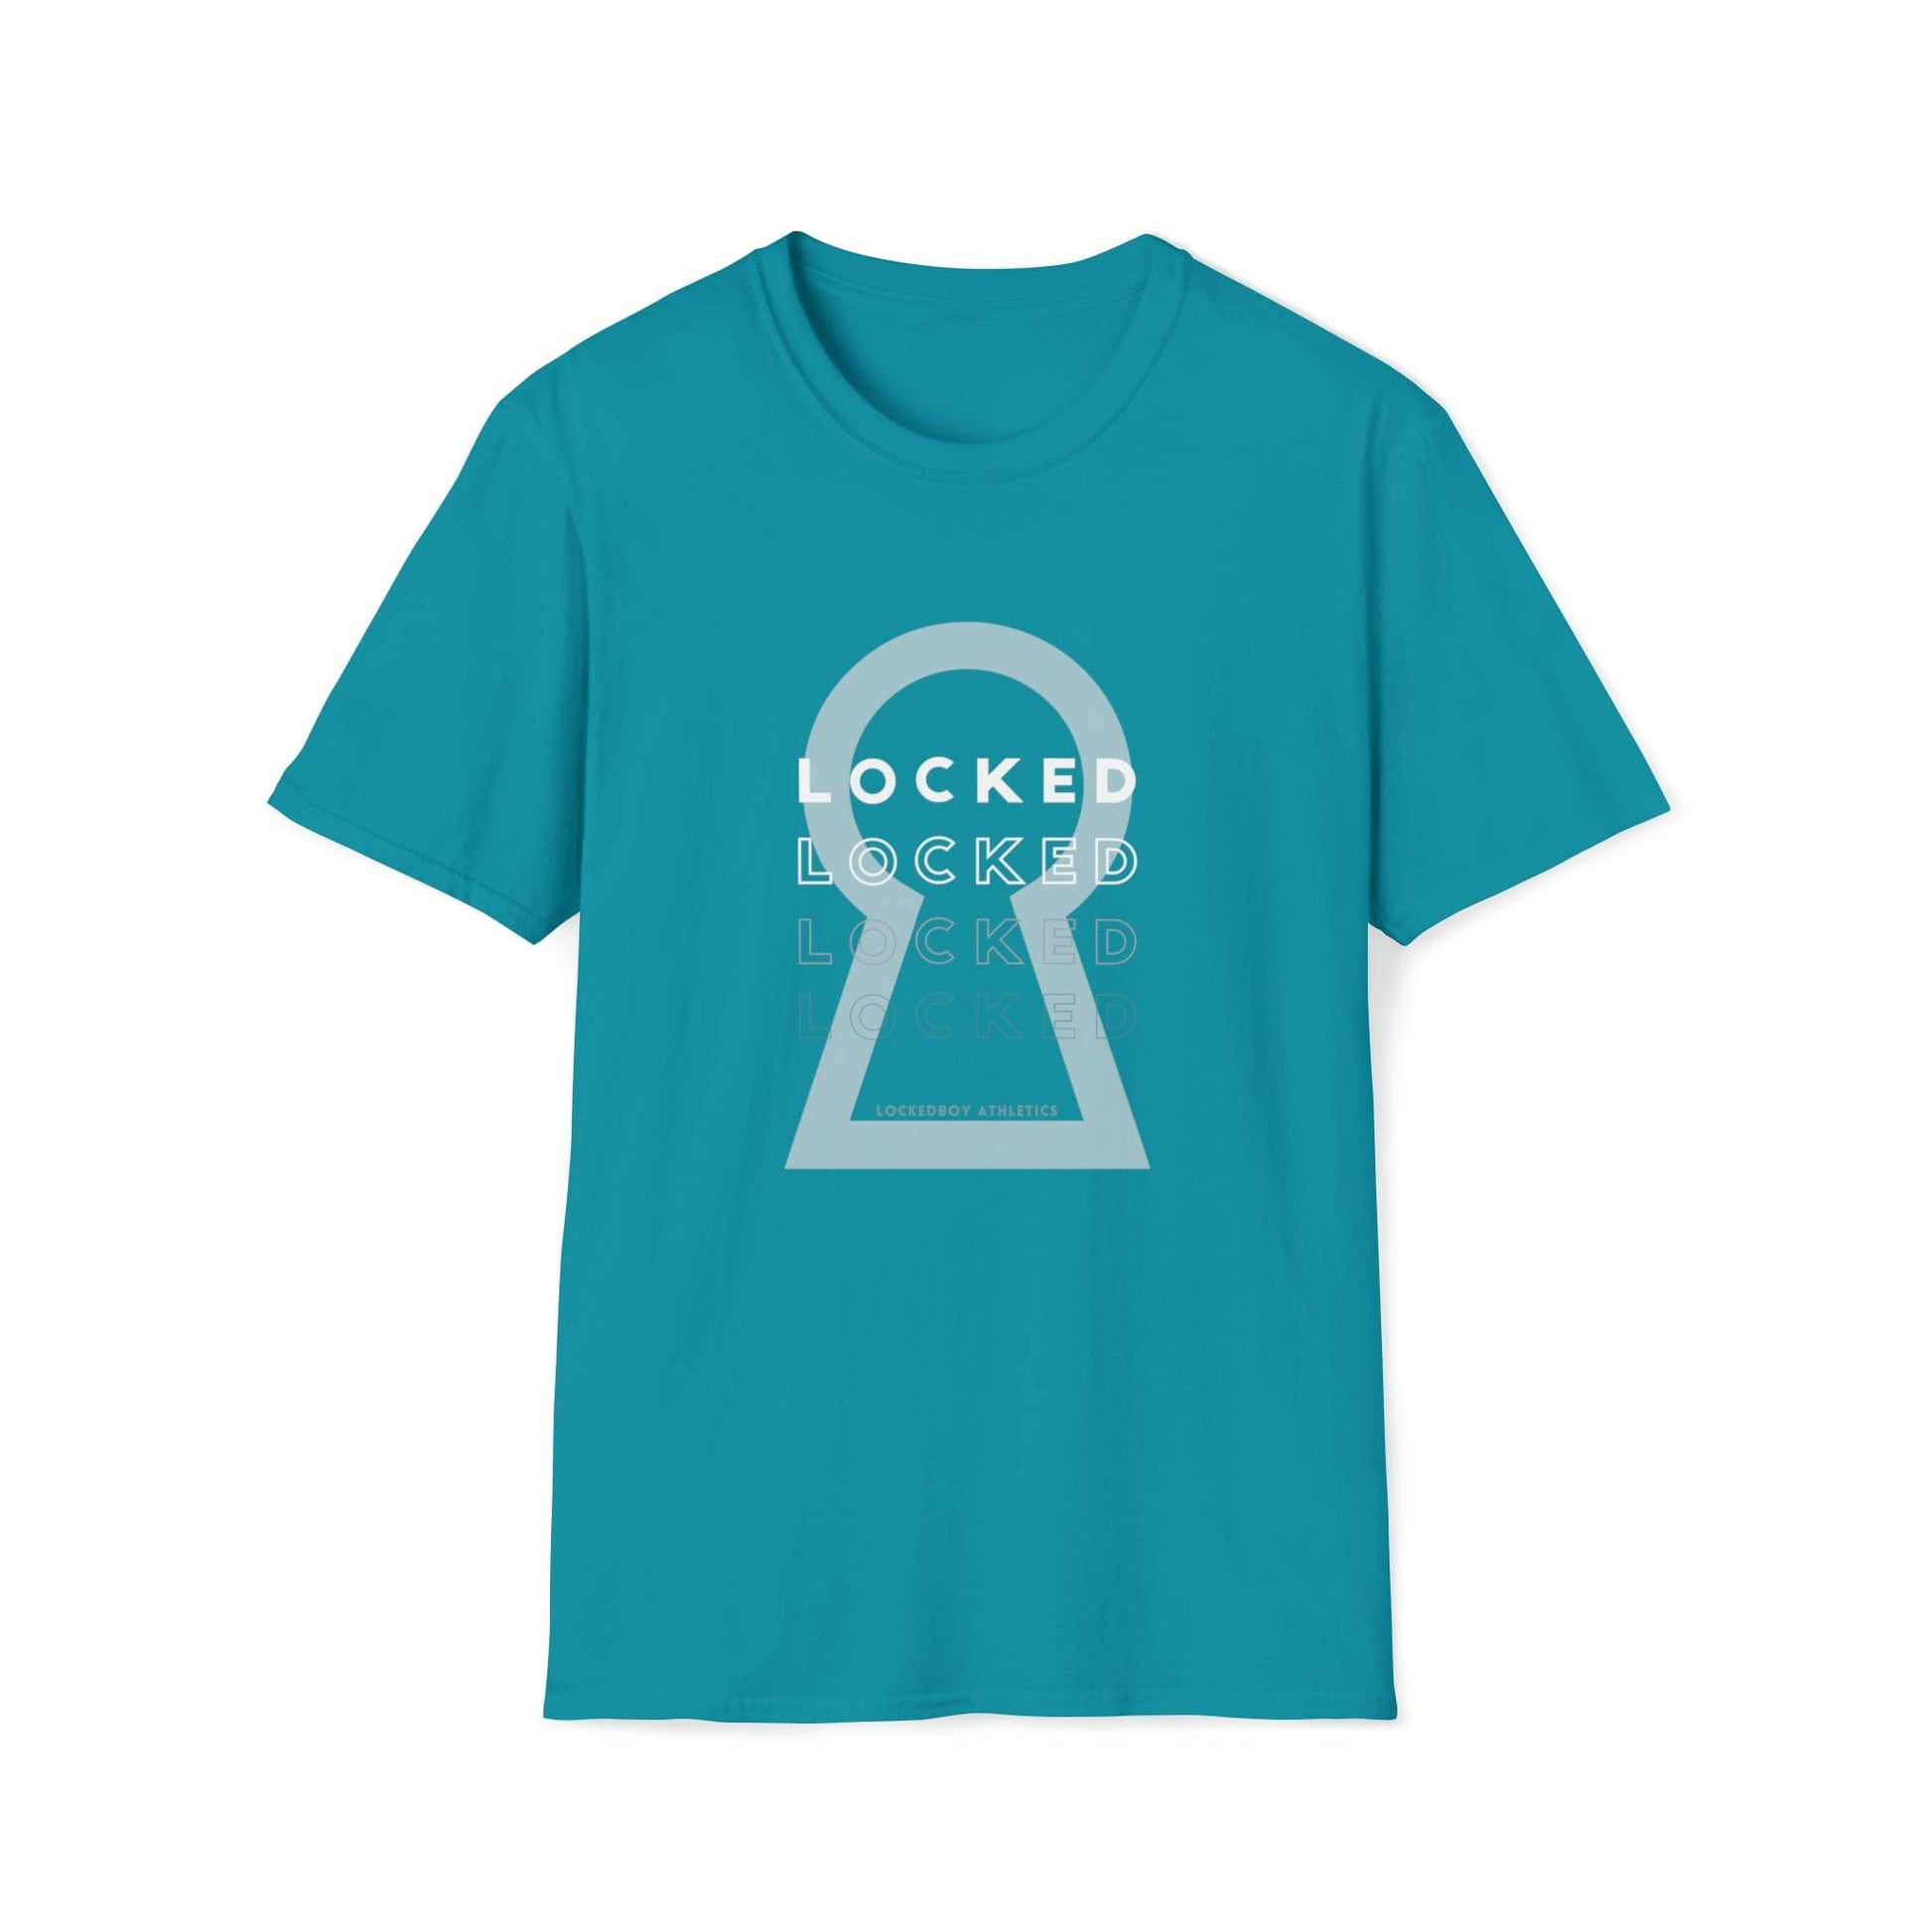 T-Shirt Tropical Blue / S Lockedboy KeyHOLE Echo - Lockedboy Athletics Chastity Tshirt LEATHERDADDY BATOR